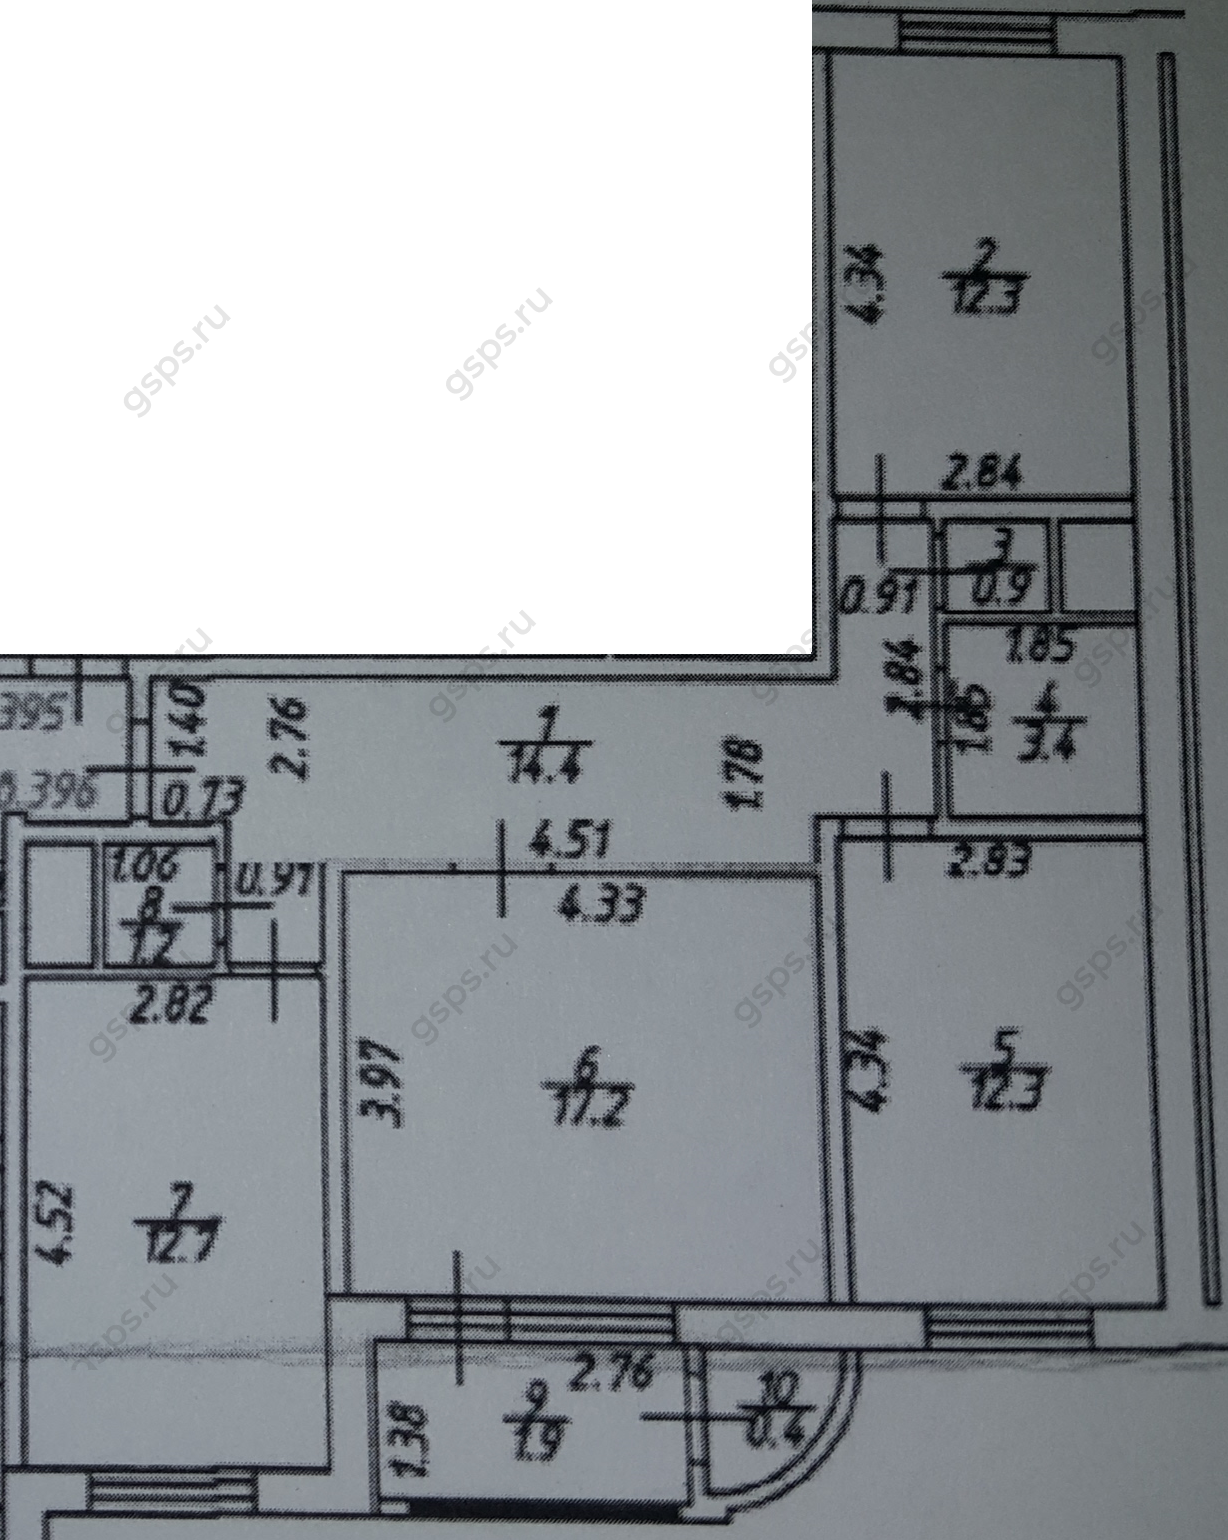 План БТИ трехкомнатной квартиры серии П111М